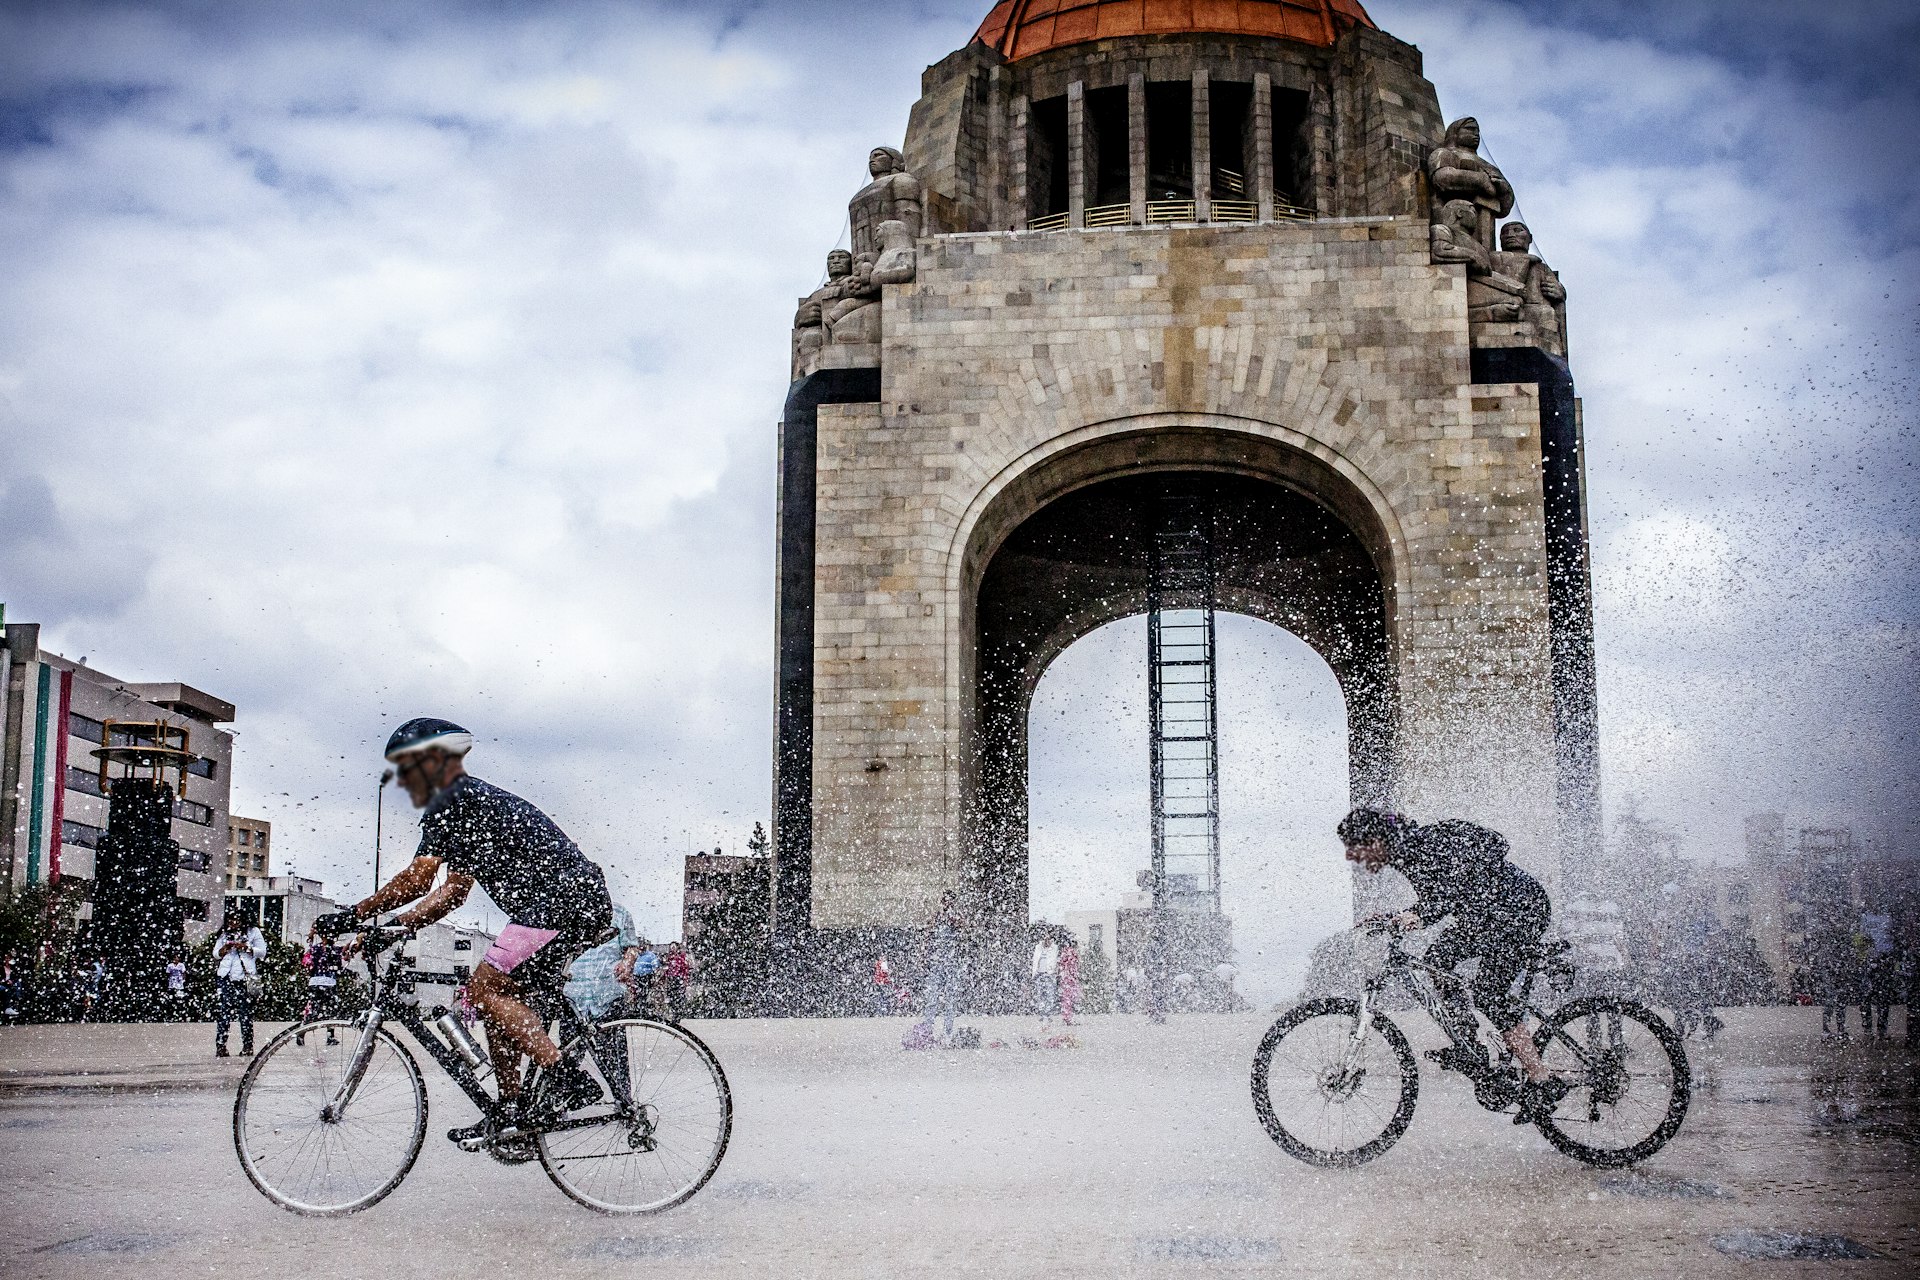 Cyclists ride past the Monumento a la Revolución in Mexico City